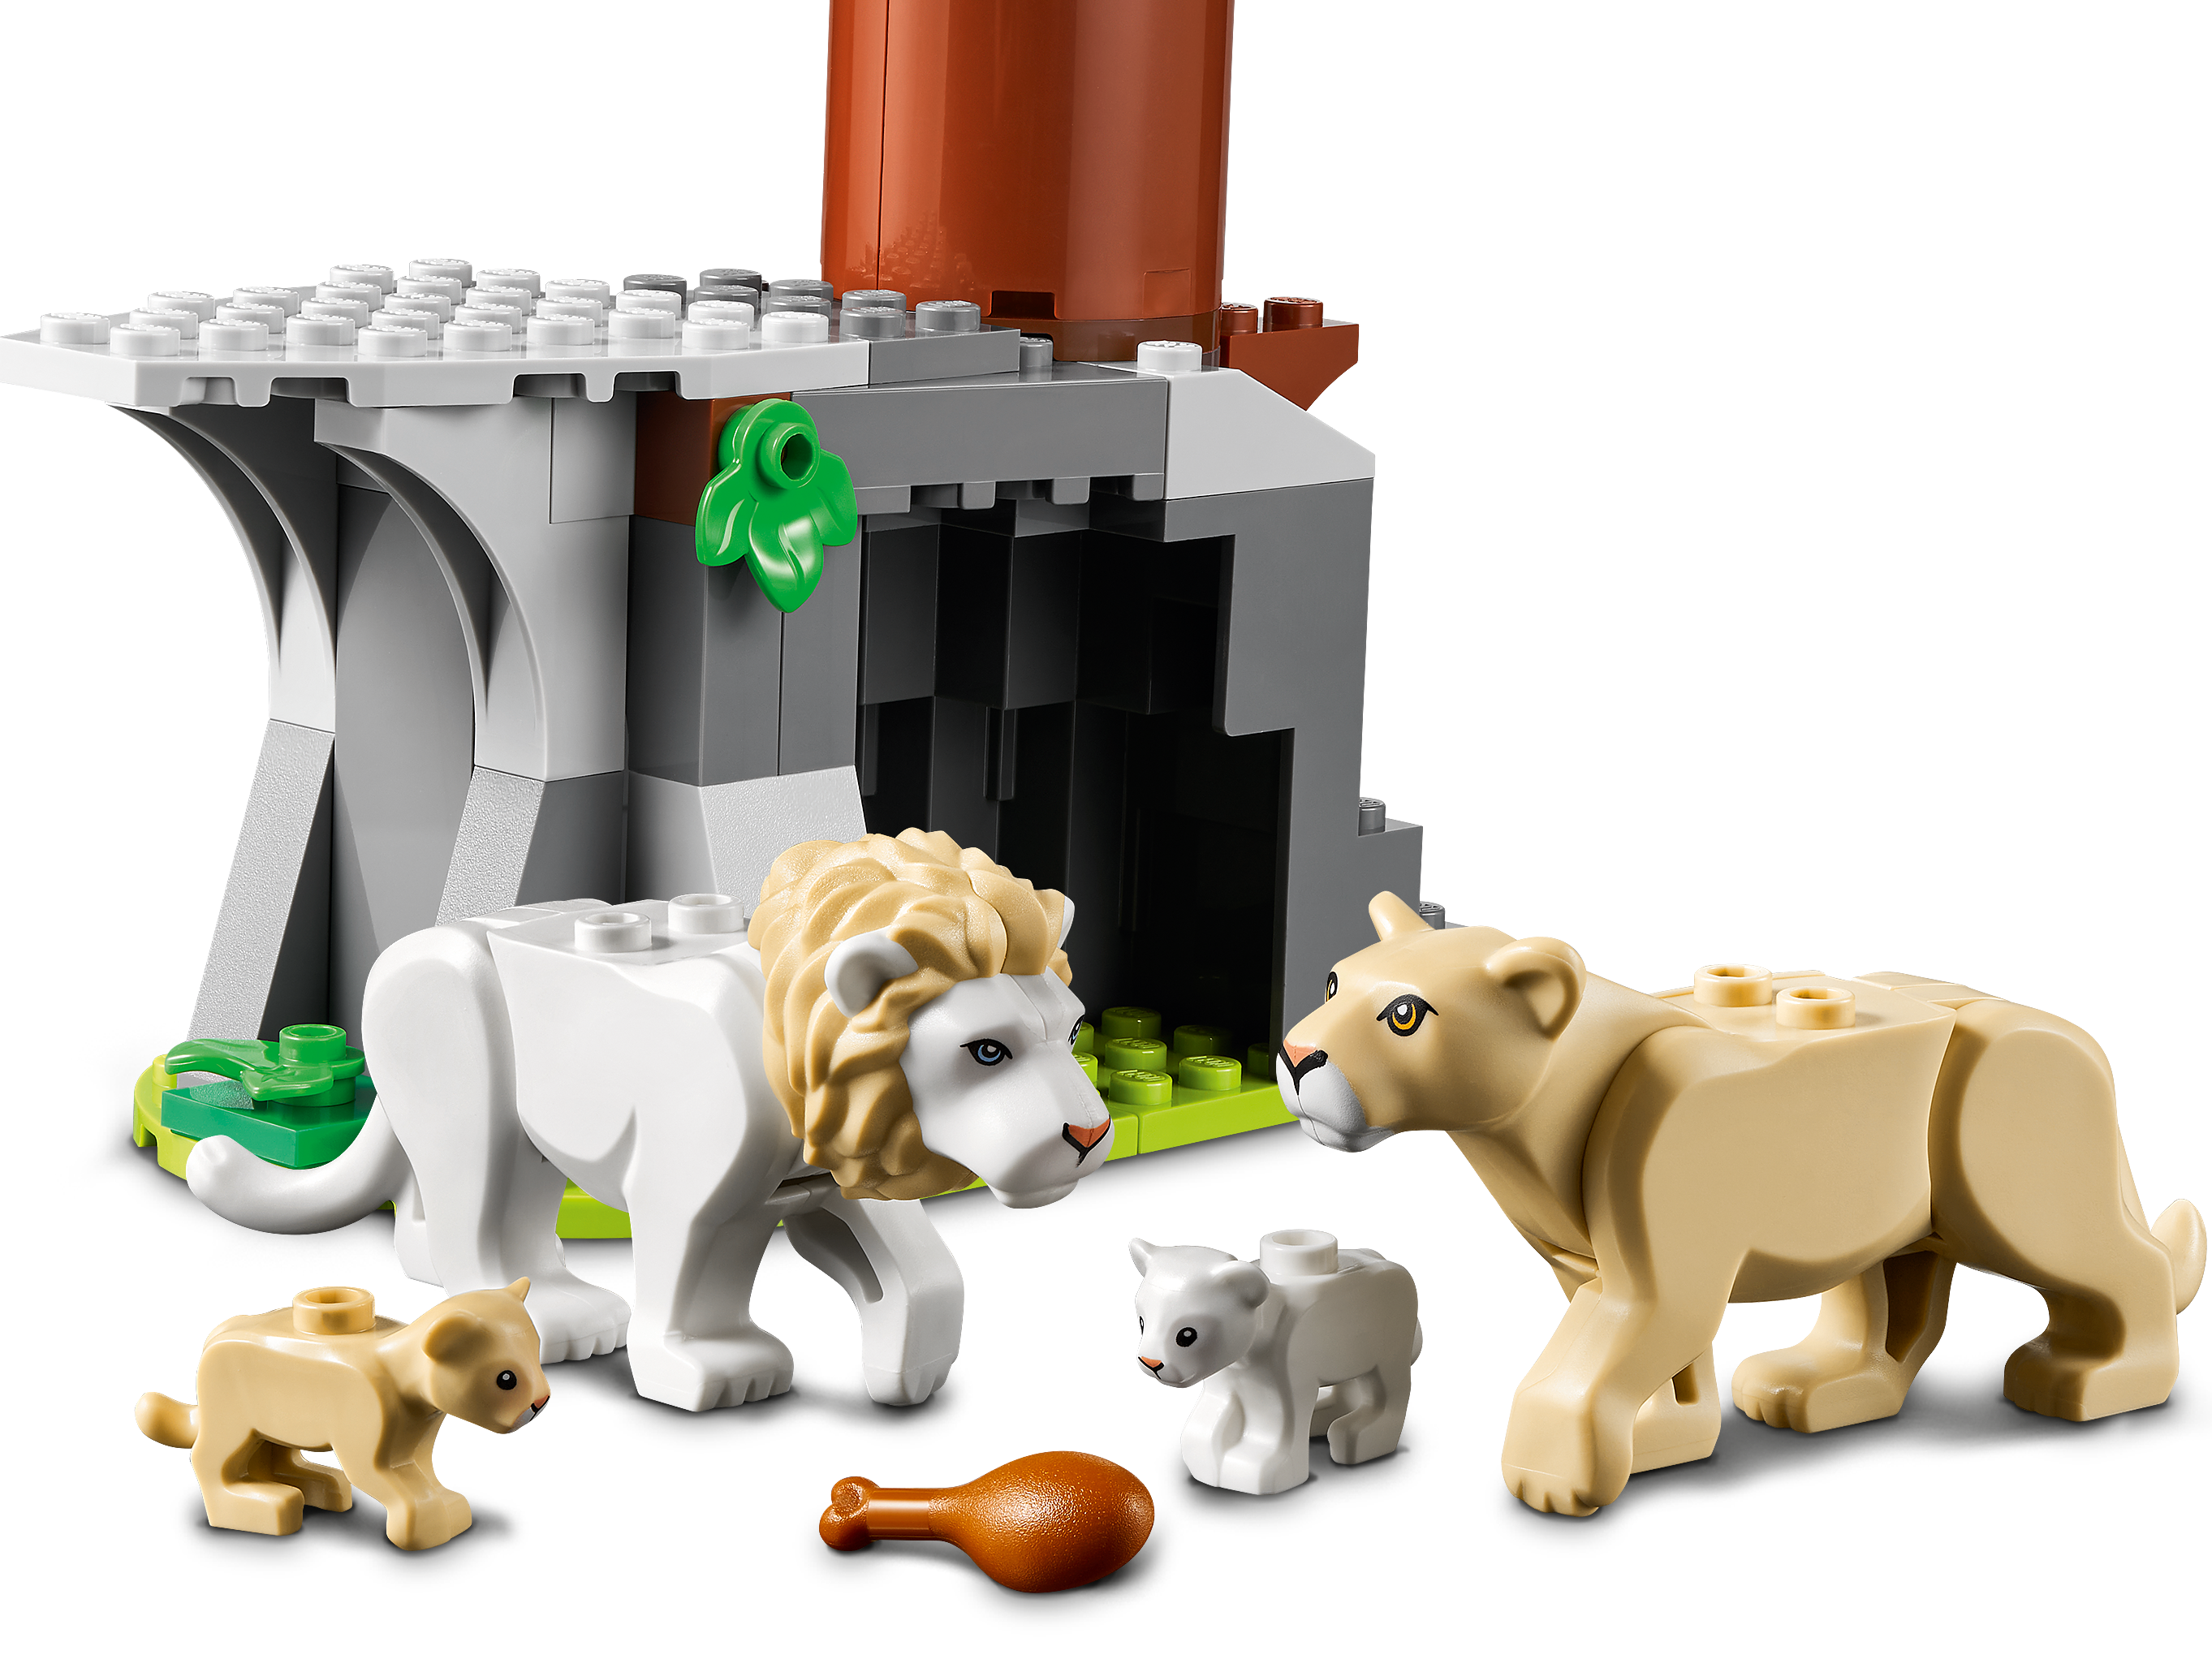 LEGO 60307 CITY Accampamento di soccorso animale NUOVO NEW 